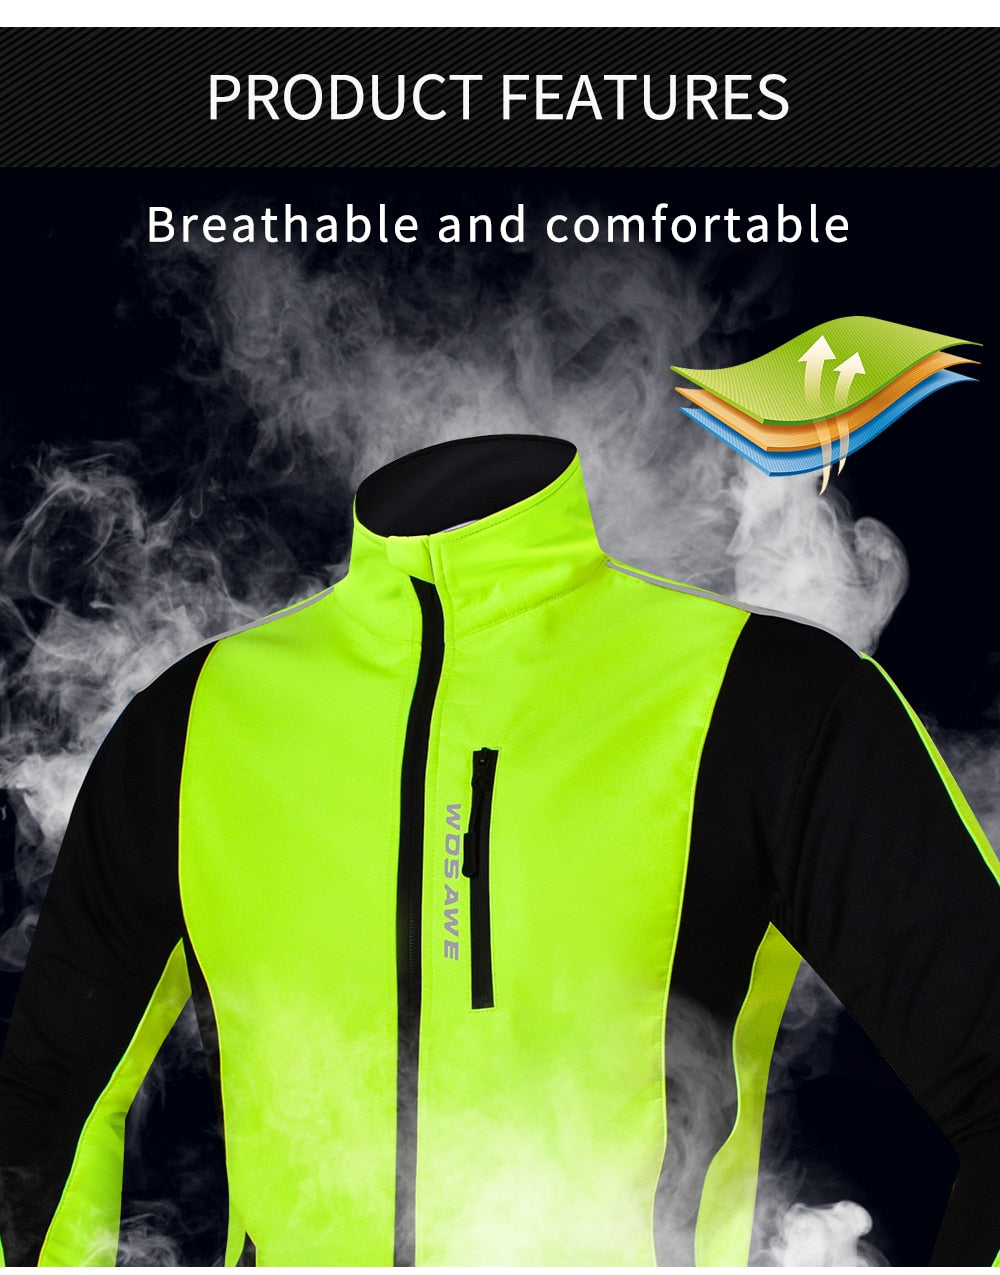 Waterproof Windproof Thermal Fleece Cycling Jacket Bike Jersey